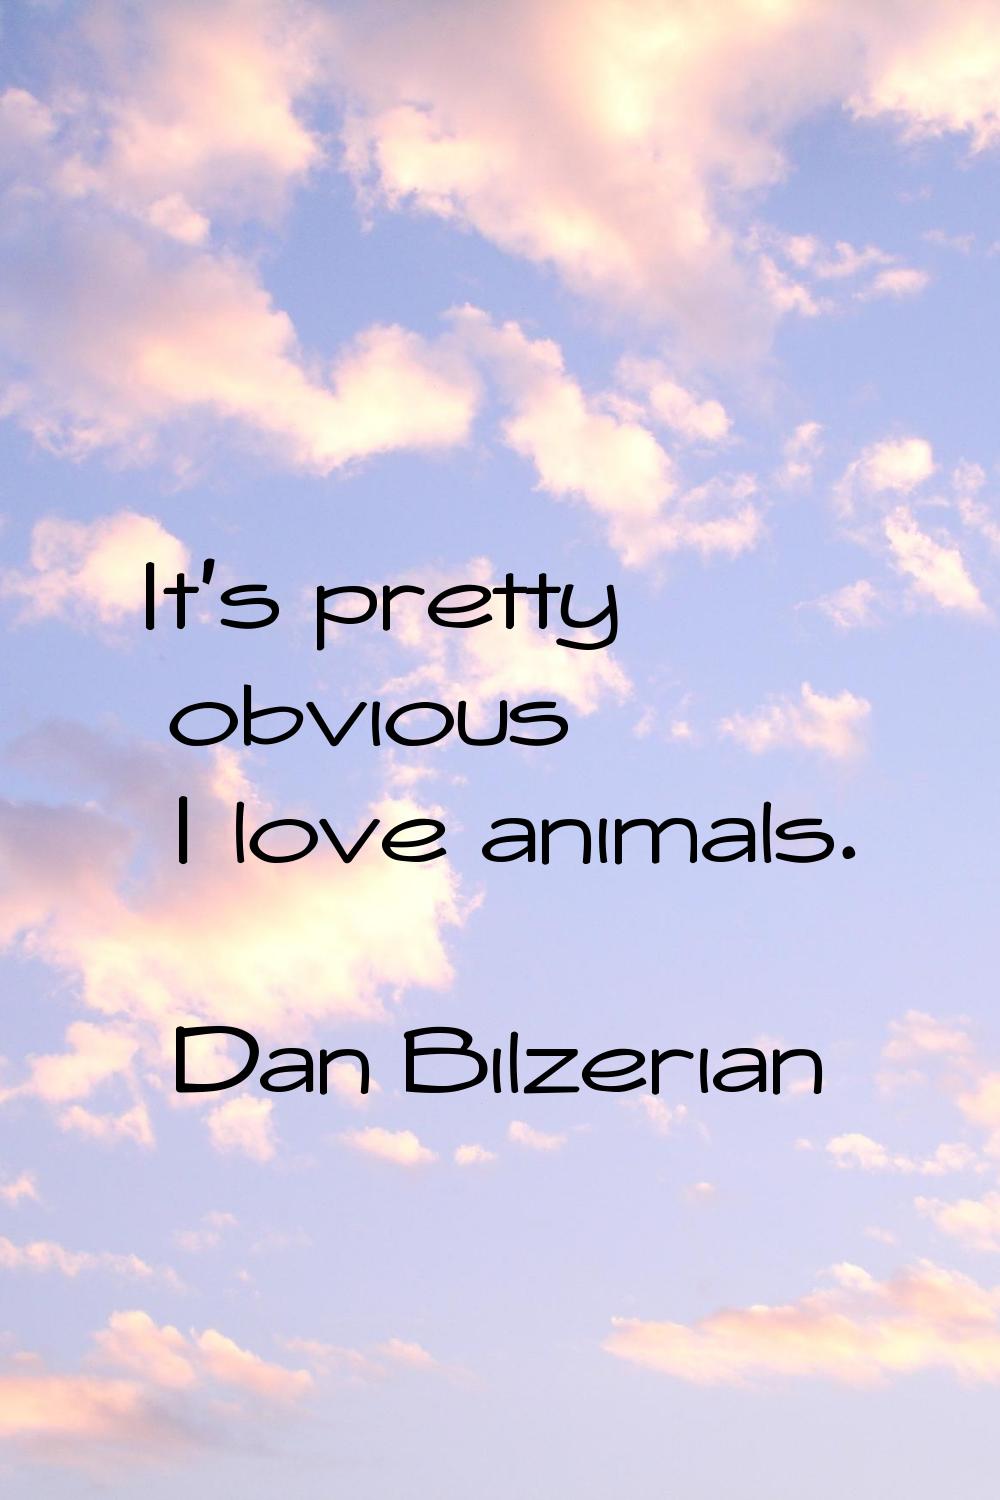 It's pretty obvious I love animals.